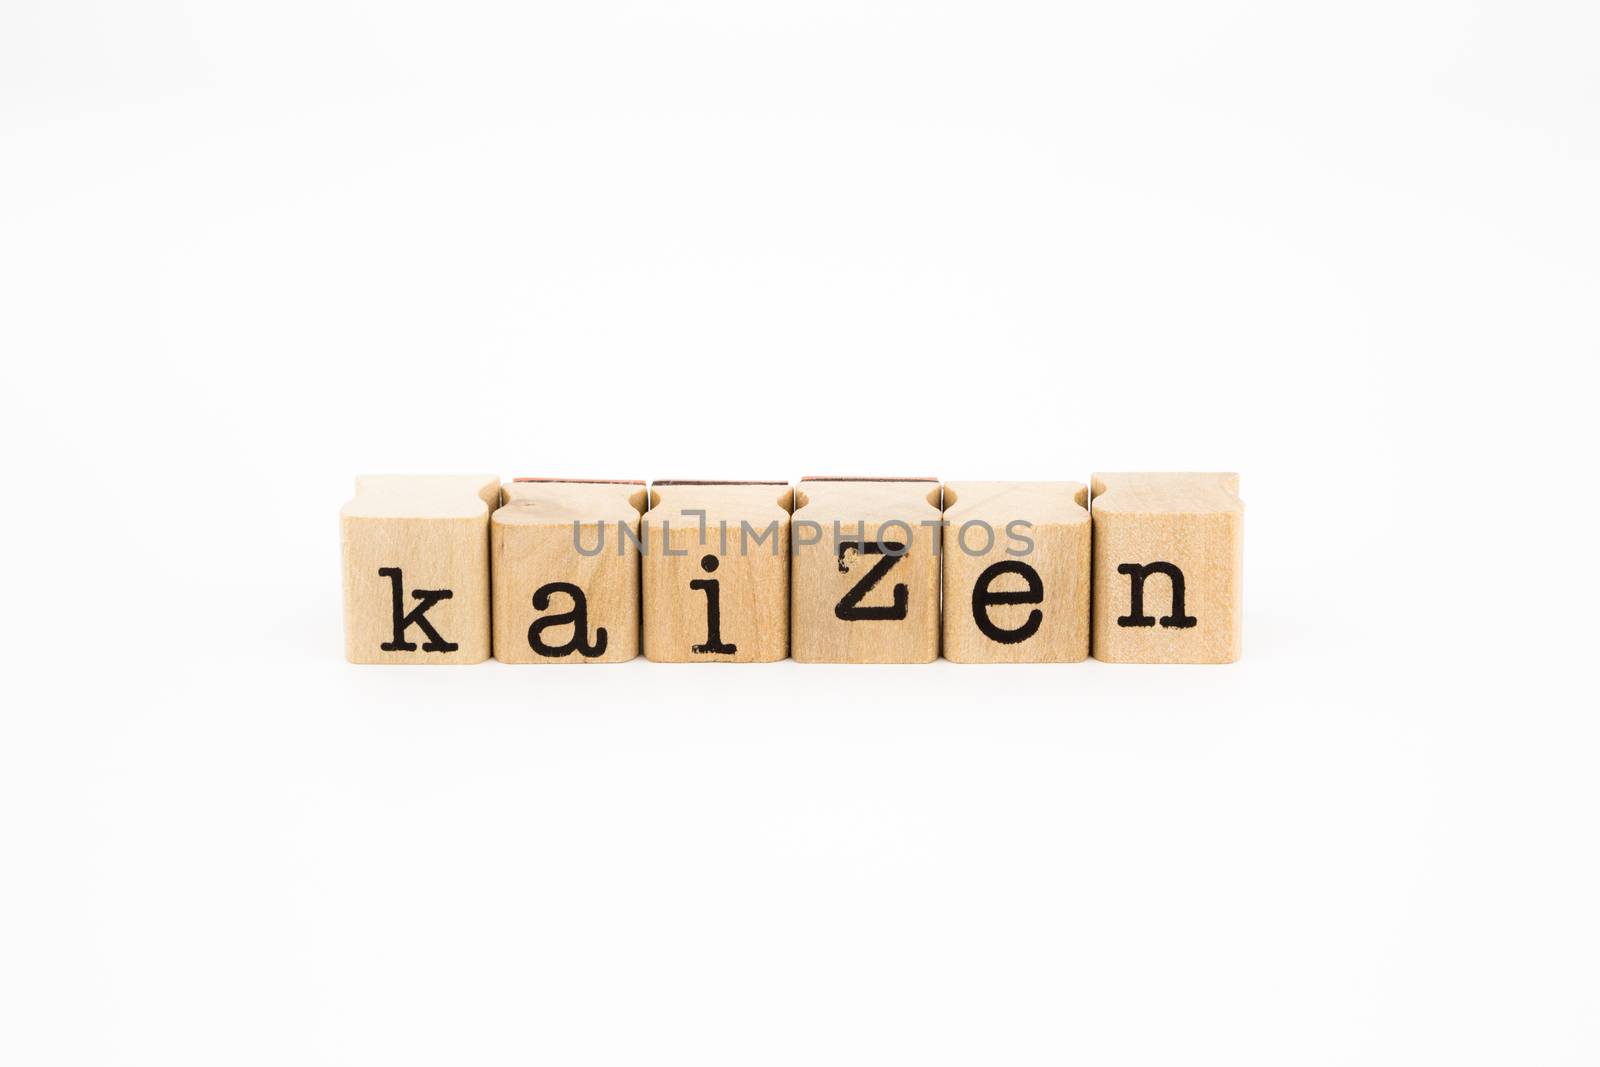 kaizen wording isolate on white background by vinnstock